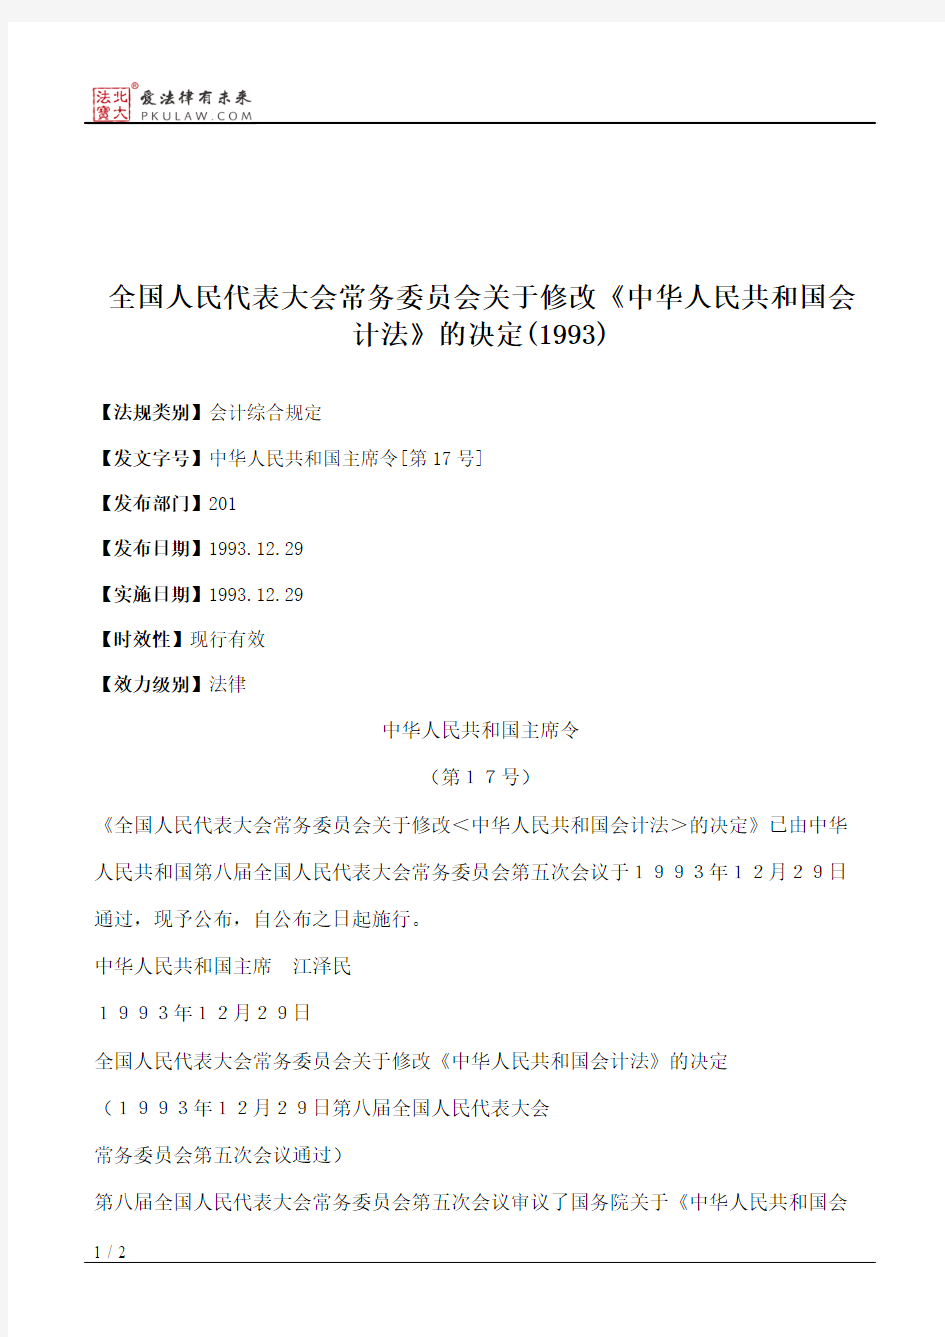 全国人大常委会关于修改《中华人民共和国会计法》的决定(1993)